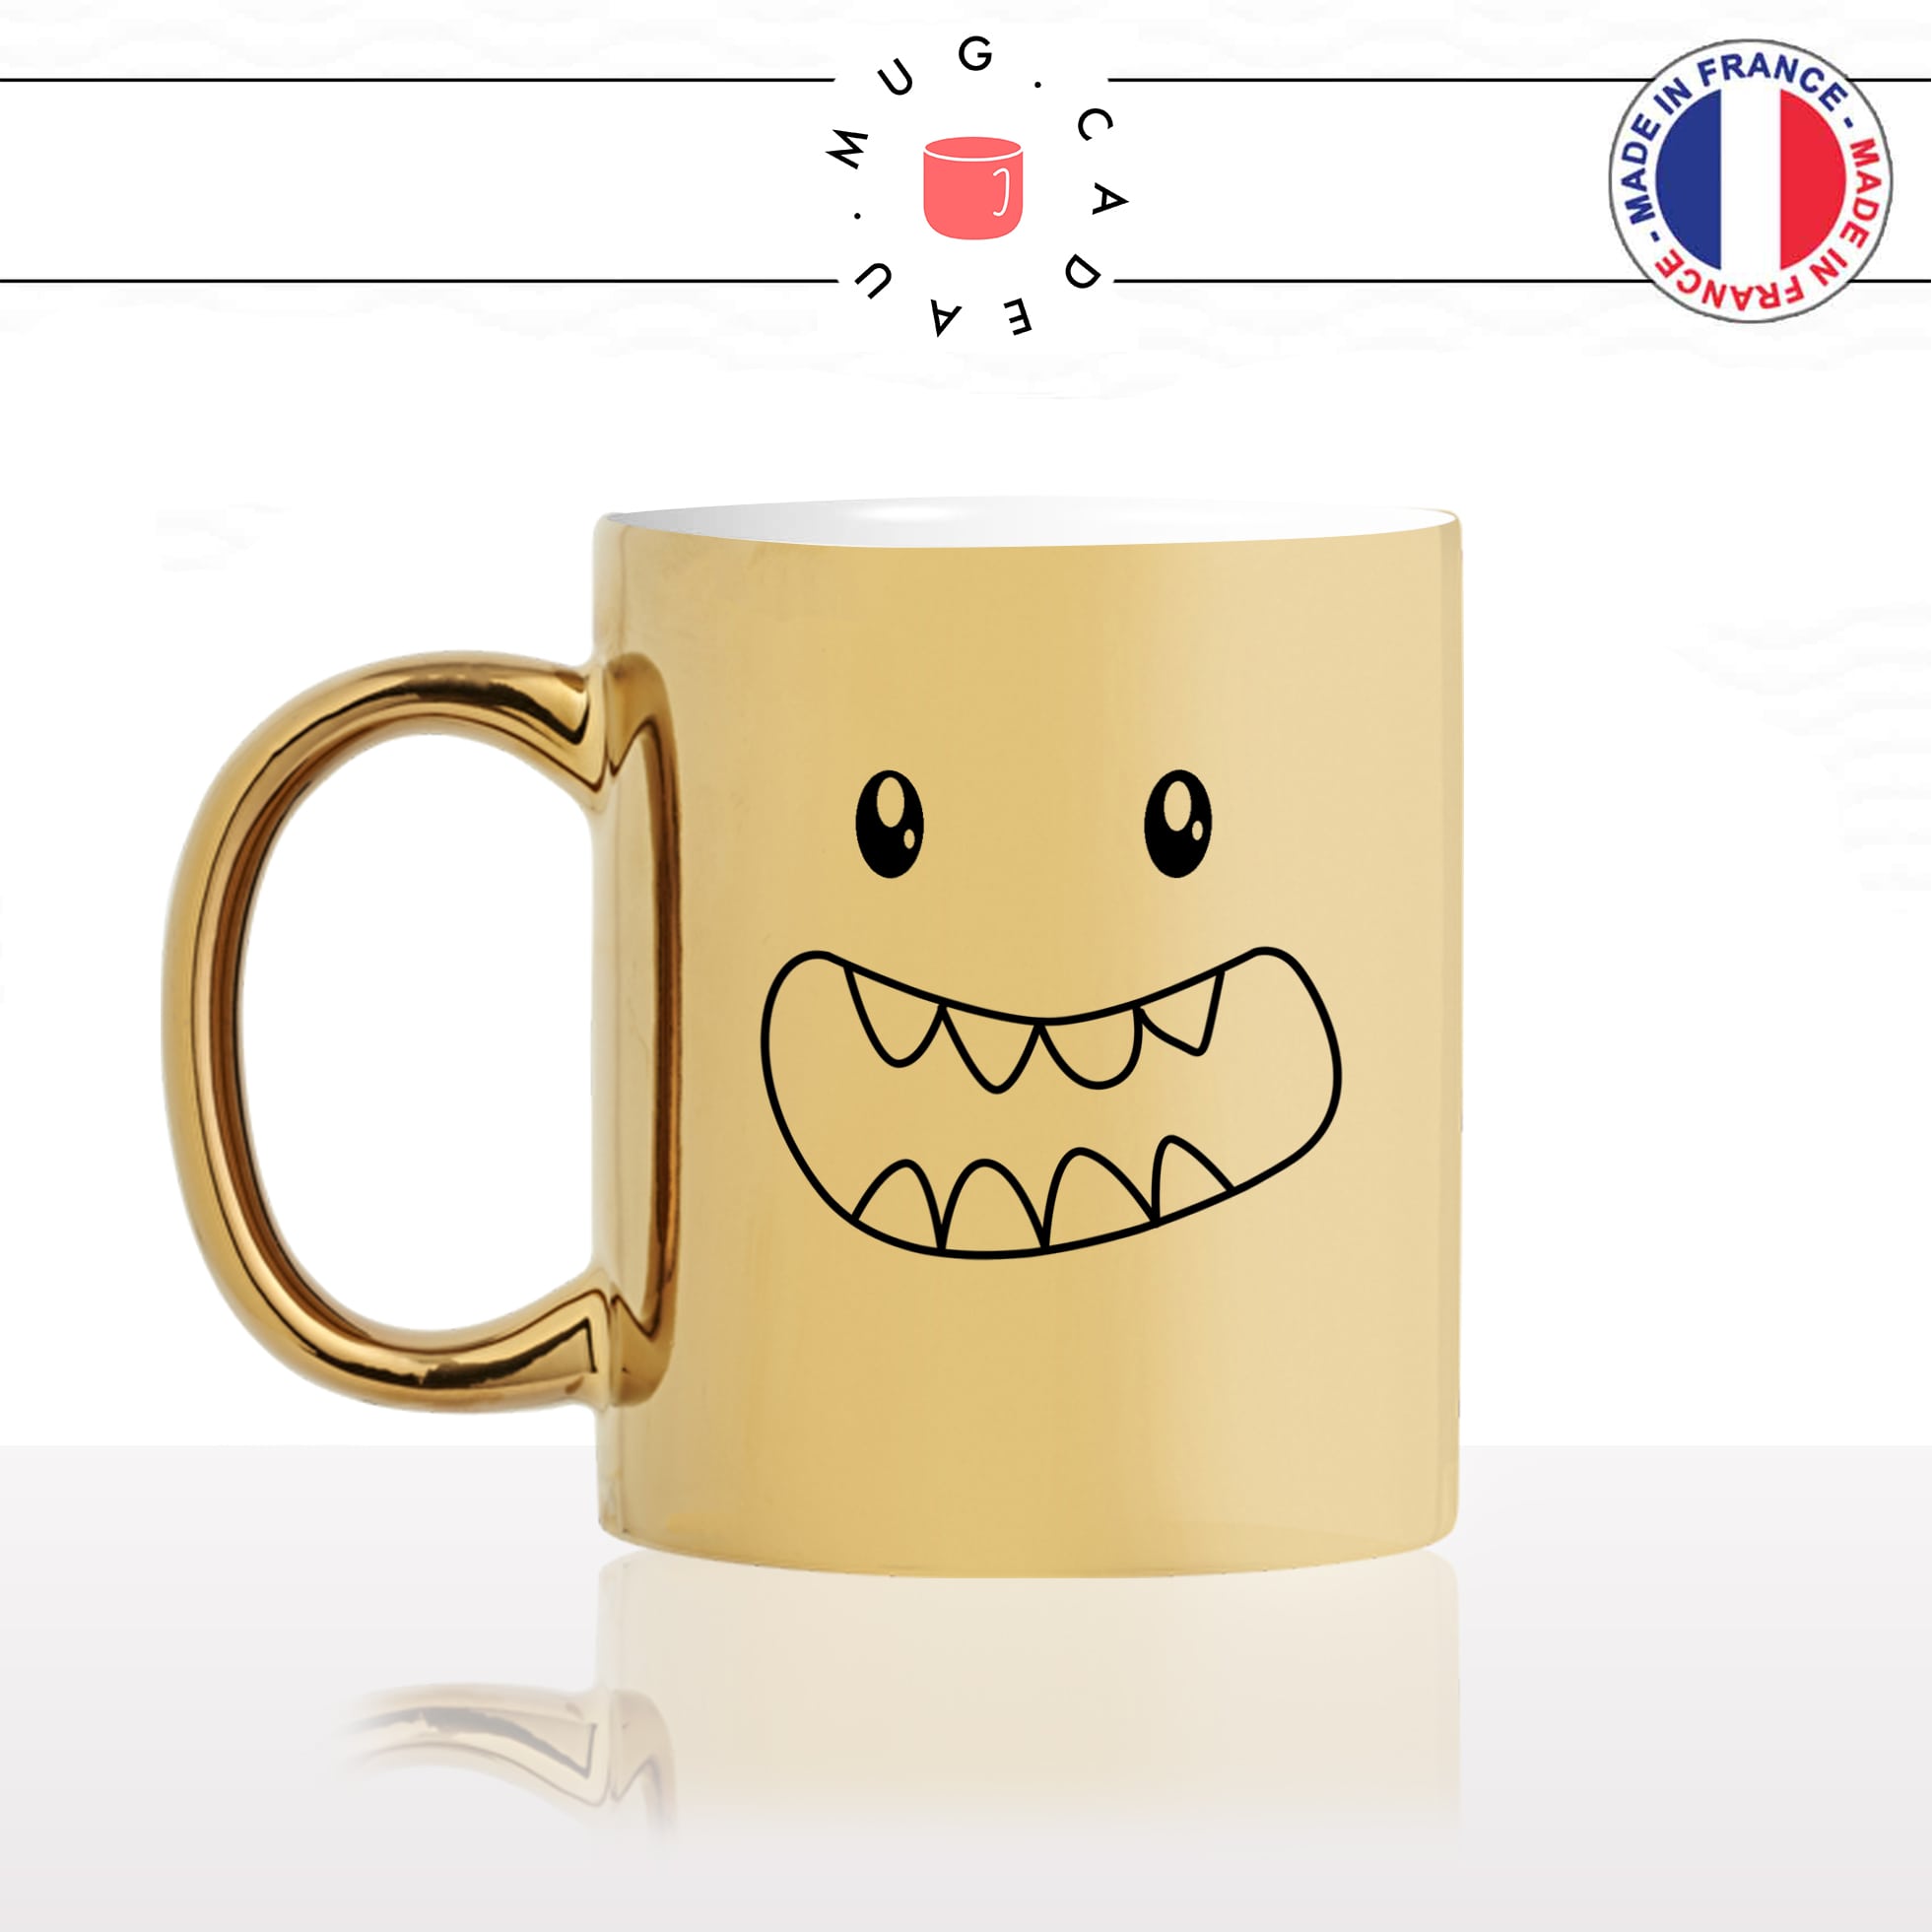 mug-tasse-or-doré-monstre-gentil-dents-enfant-kawaii-dessin-mignon-animal-noir-fun-café-thé-idée-cadeau-original-personnalisé-gold-min